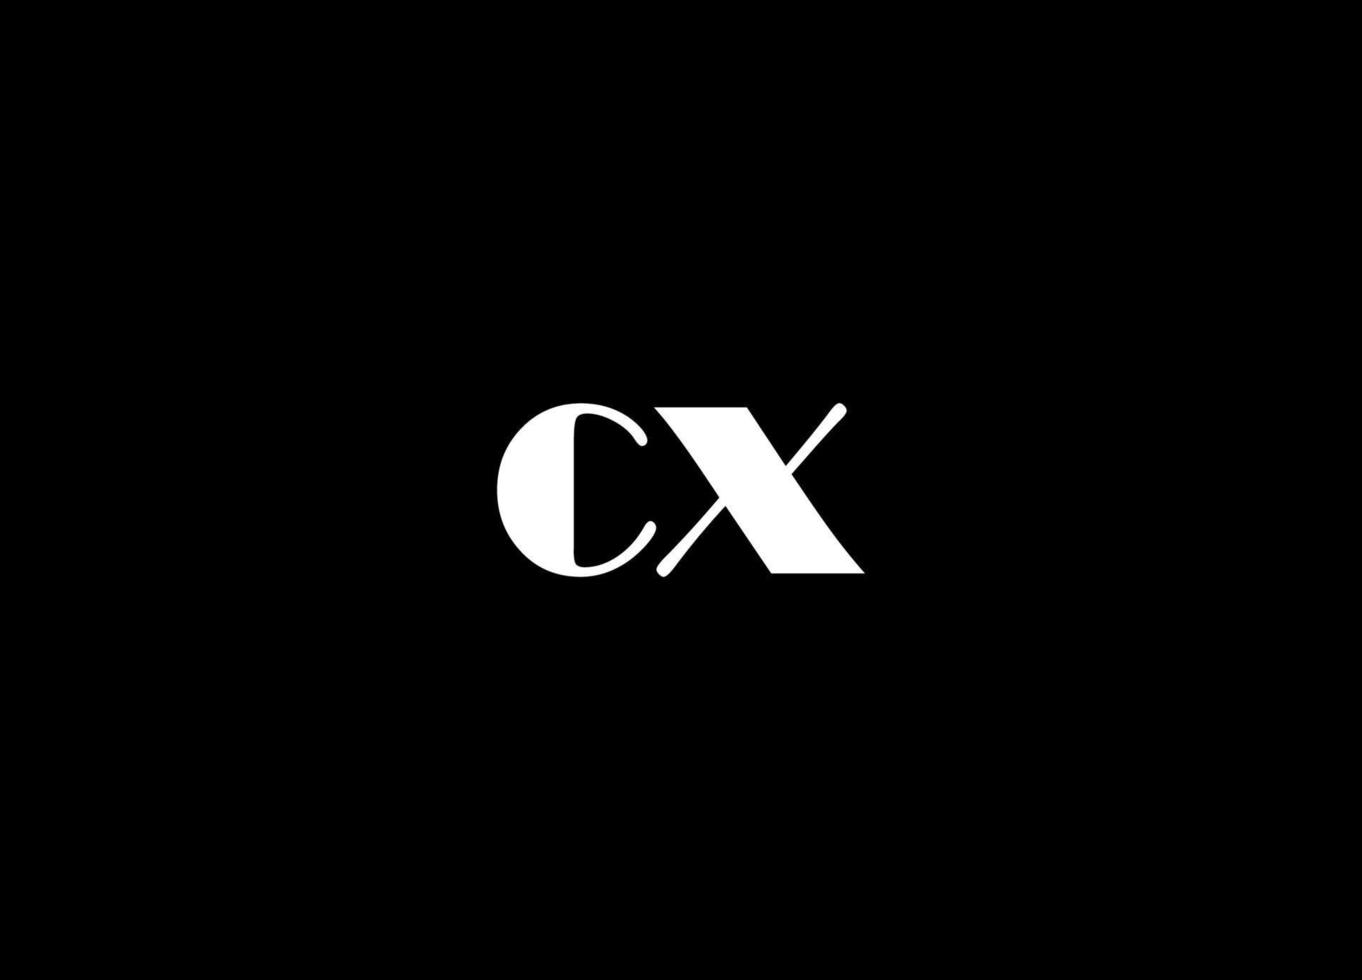 cx logo conception et entreprise logo vecteur